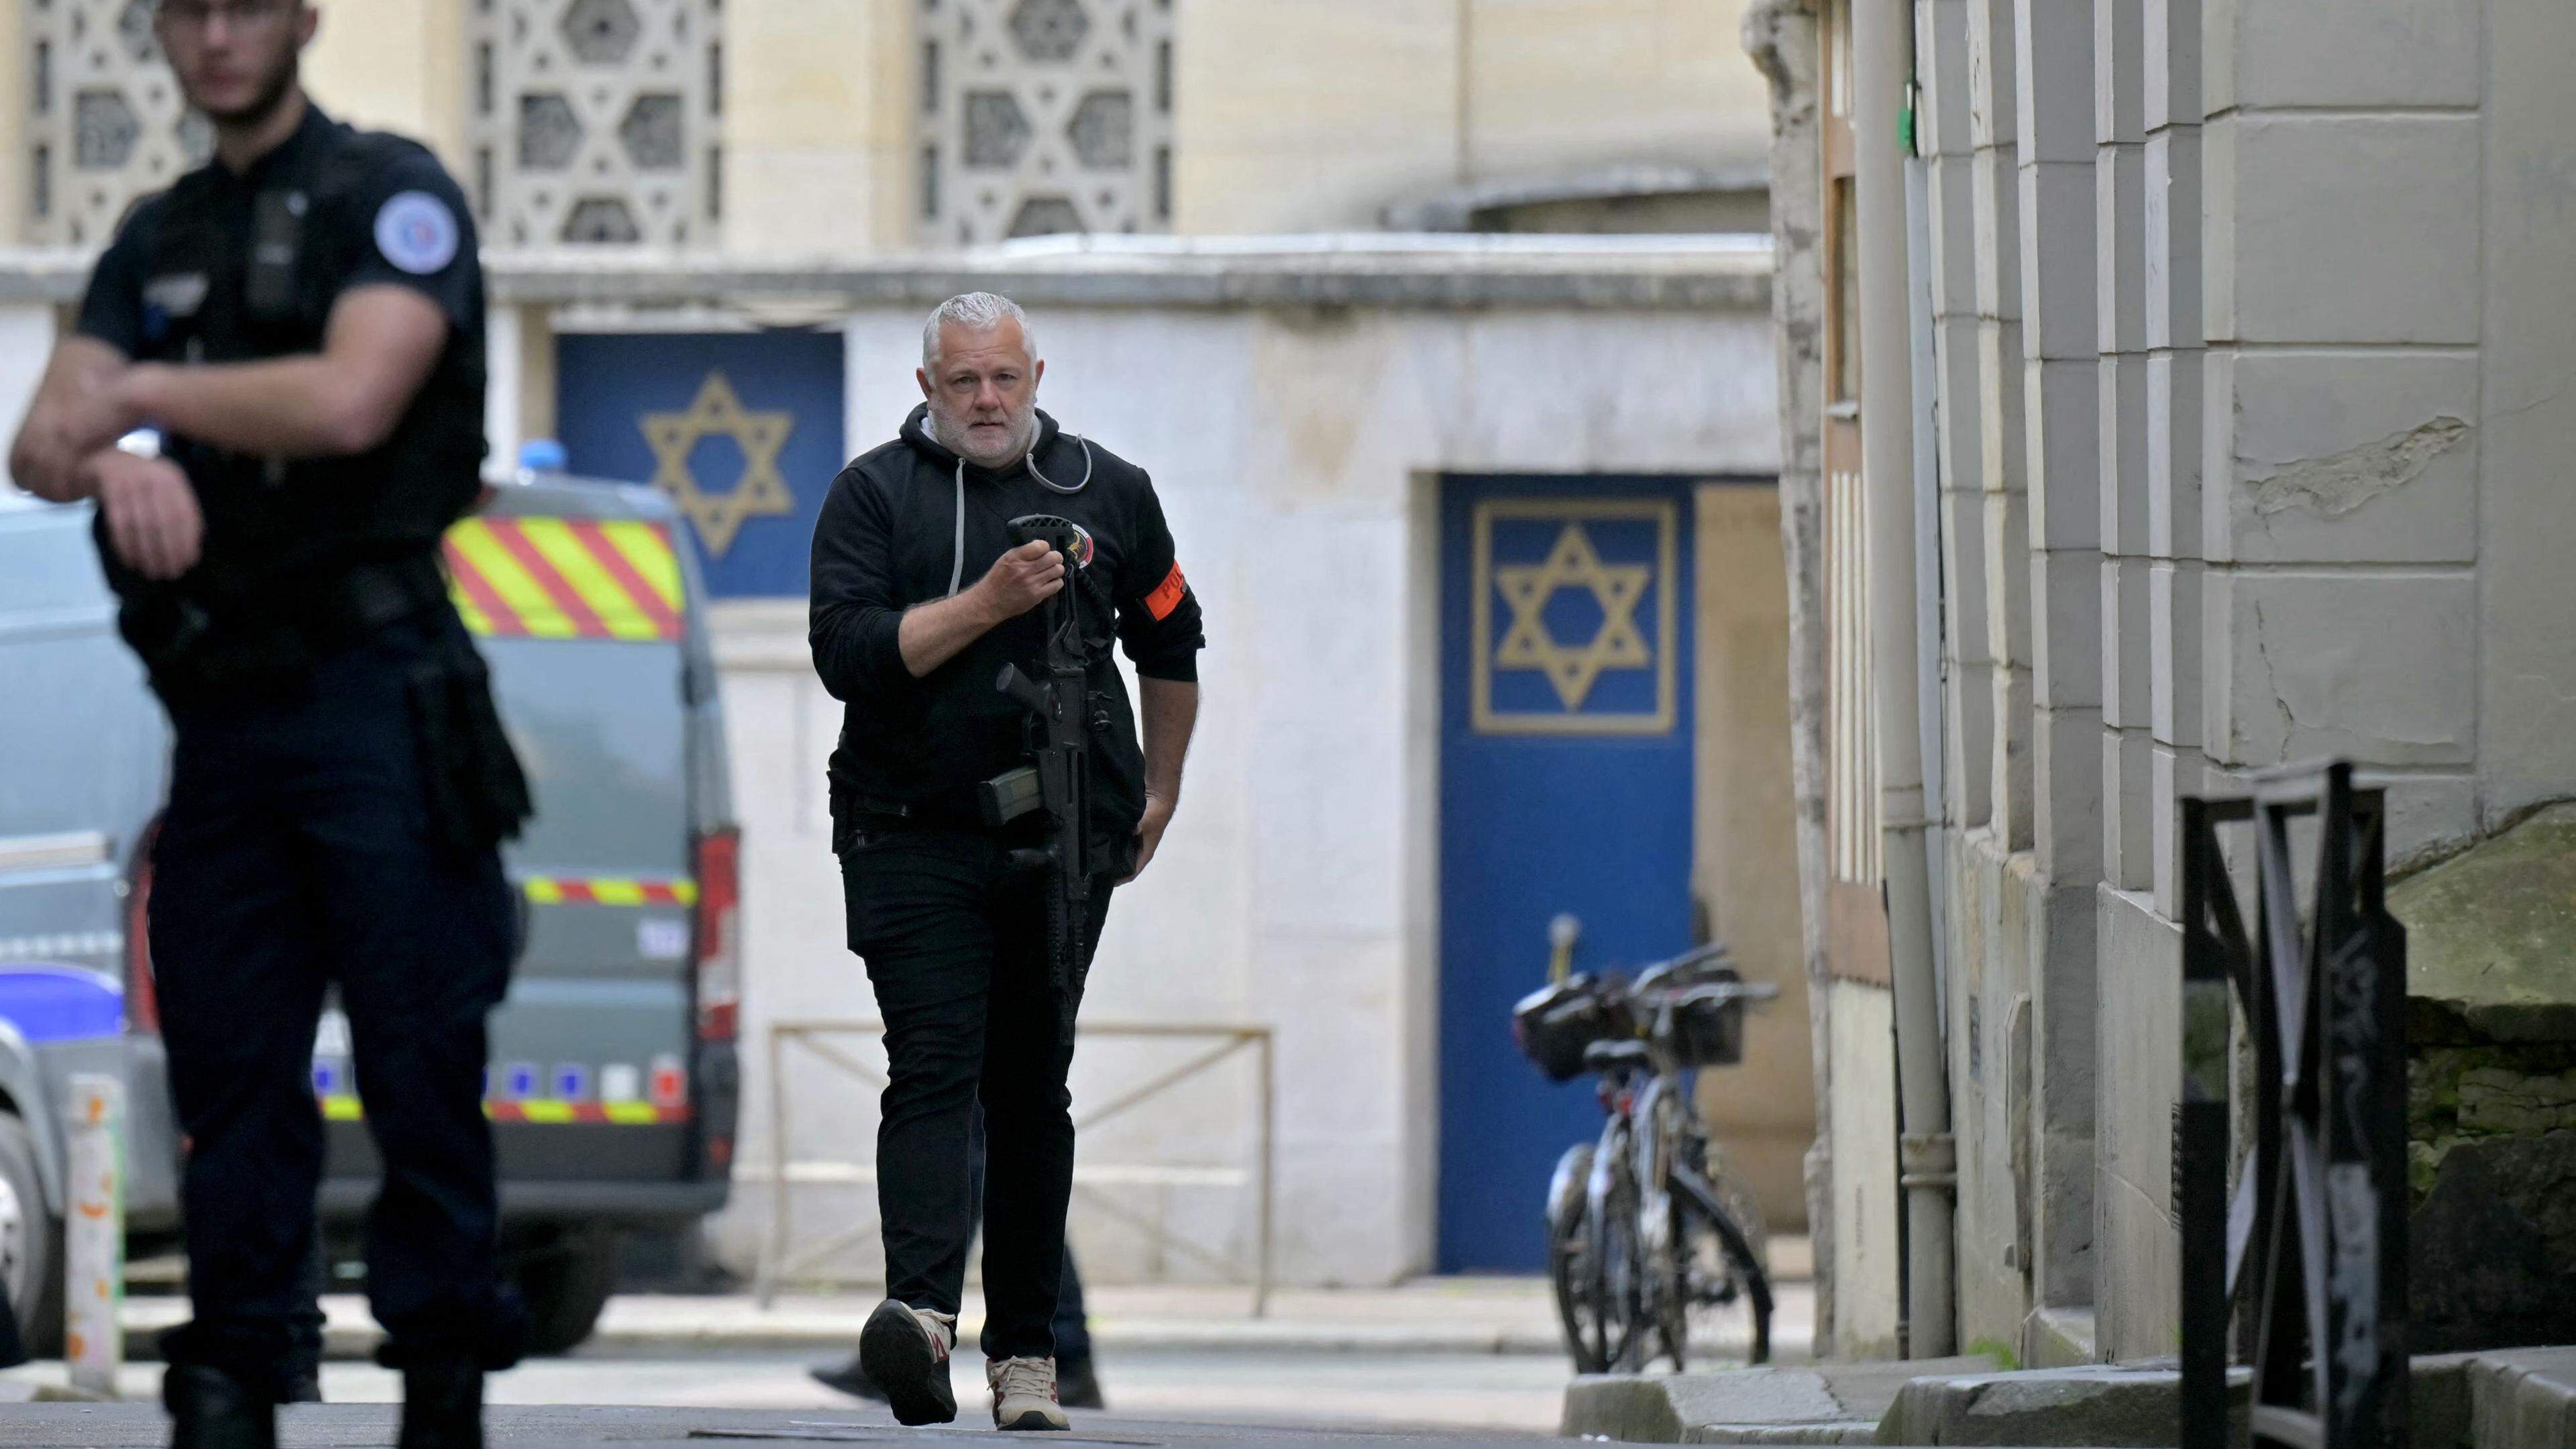 Es wurden zwei getrennte Ermittlungen eingeleitet, eine zu dem Brand in der Synagoge und eine weitere zu den Umständen des Todes der von der Polizei getöteten Person, so die Staatsanwaltschaft Rouen.